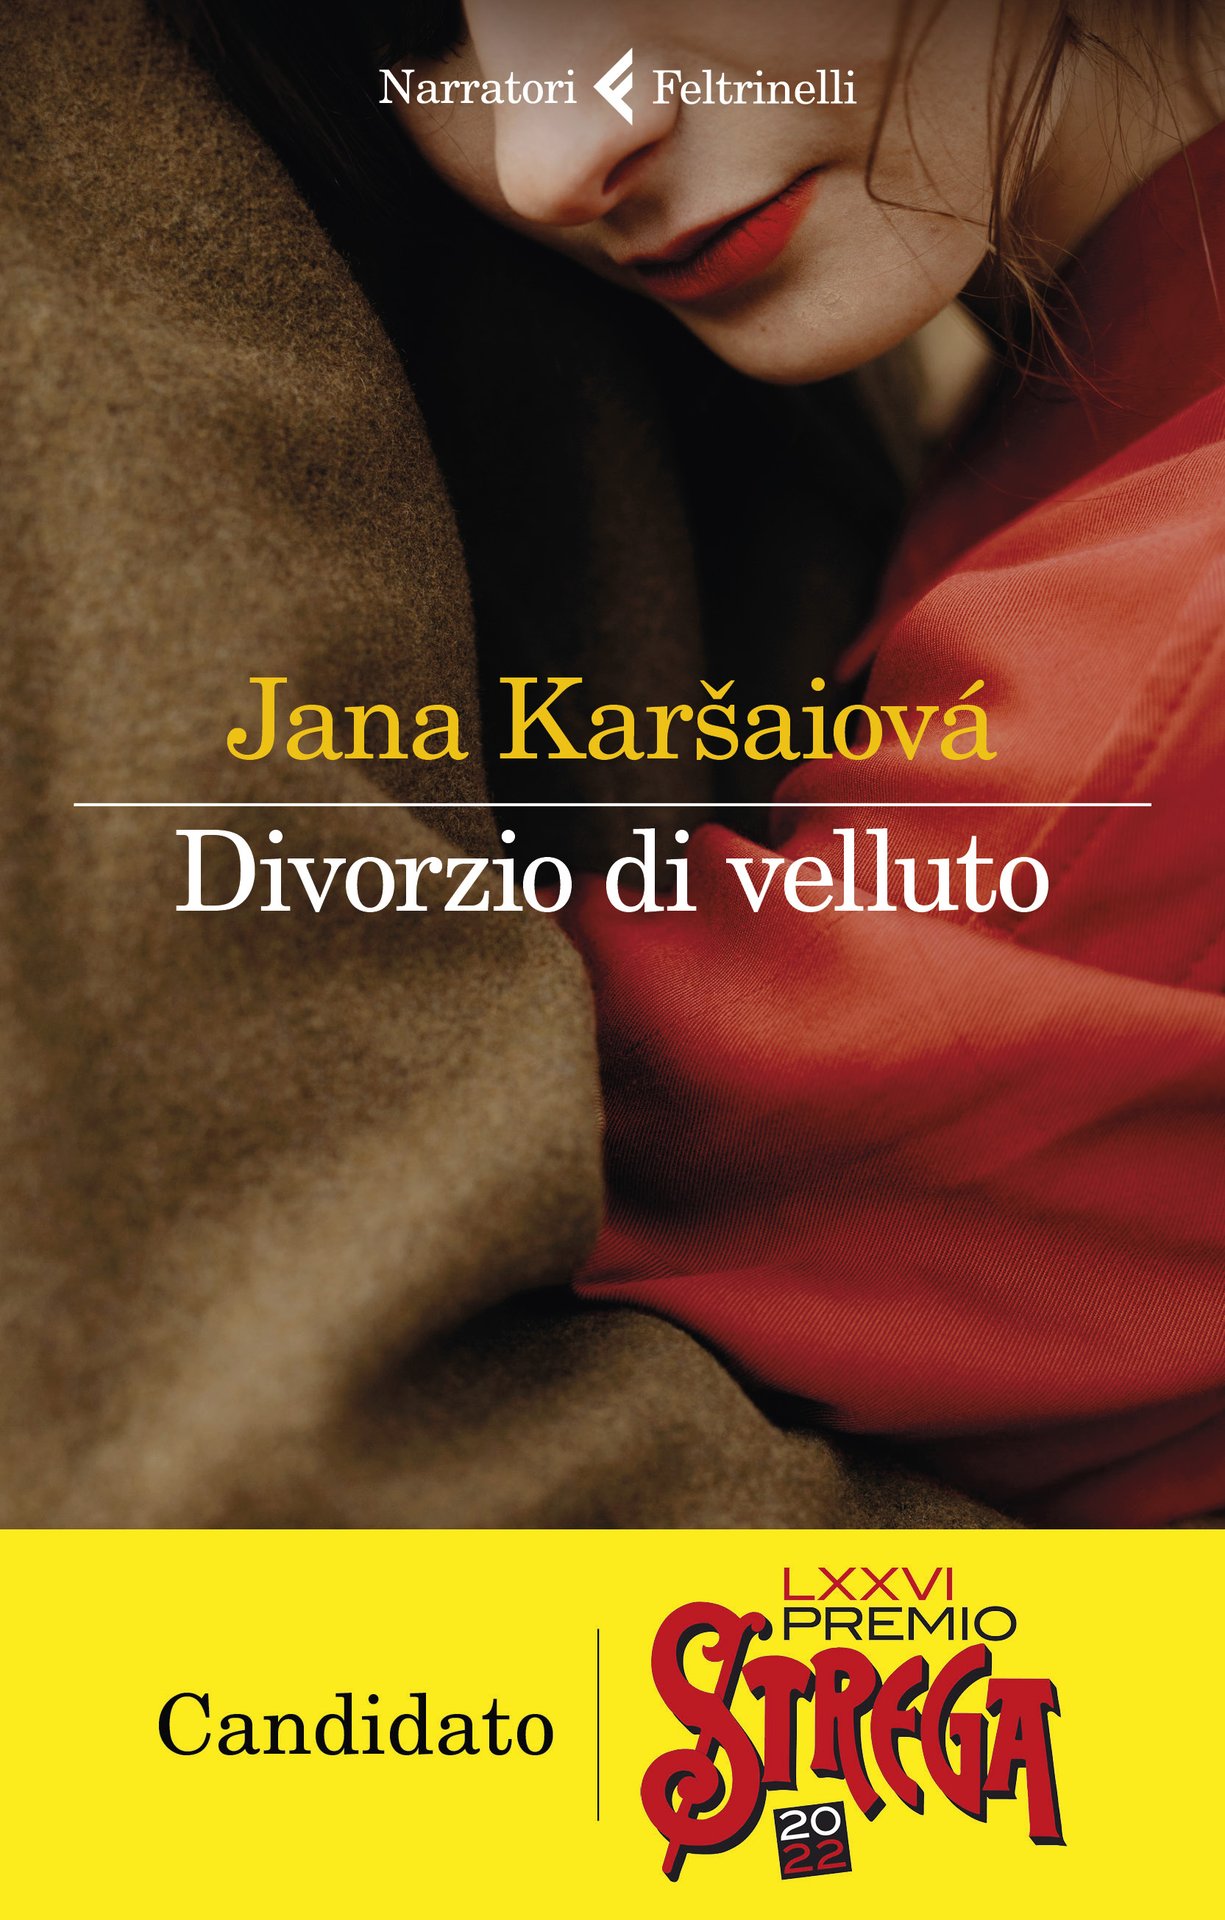 Divorzio di velluto di Jana Karšaiová è il libro Feltrinelli proposto al Premio Strega